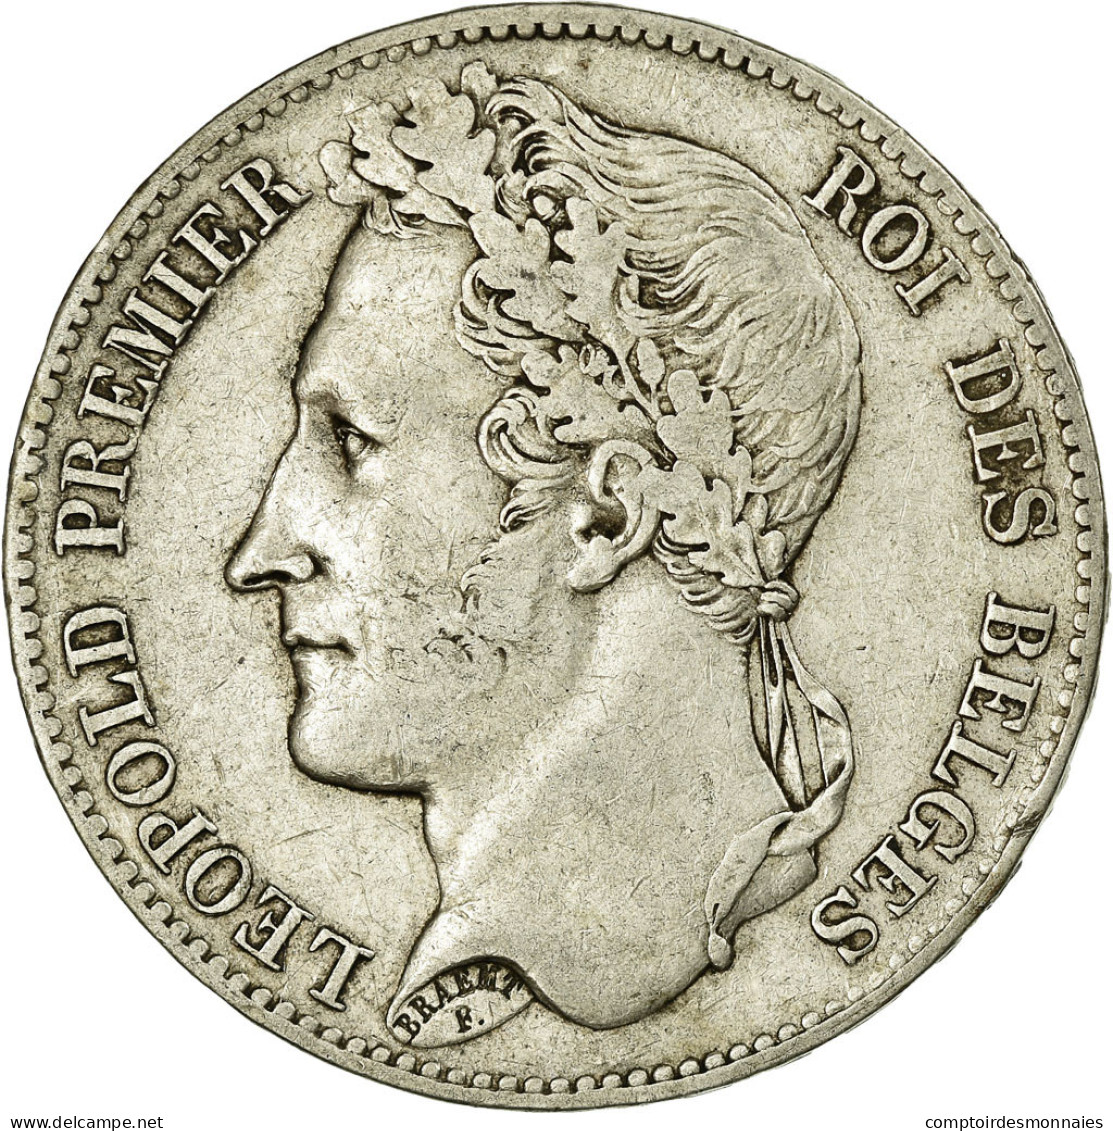 Monnaie, Belgique, Leopold I, 5 Francs, 5 Frank, 1848, TTB, Argent, KM:3.2 - 5 Francs